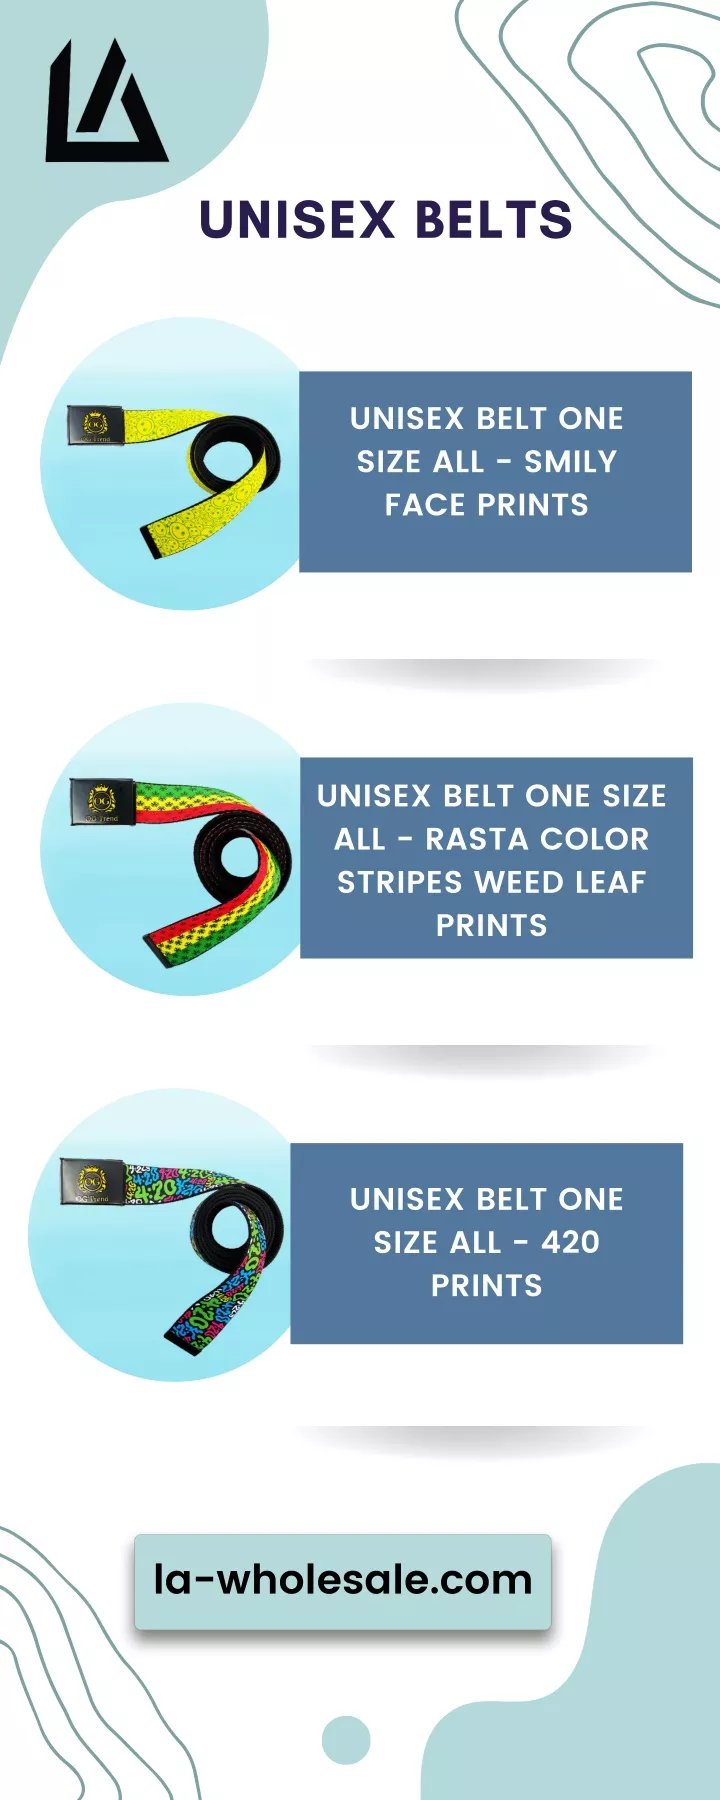 unisex belts